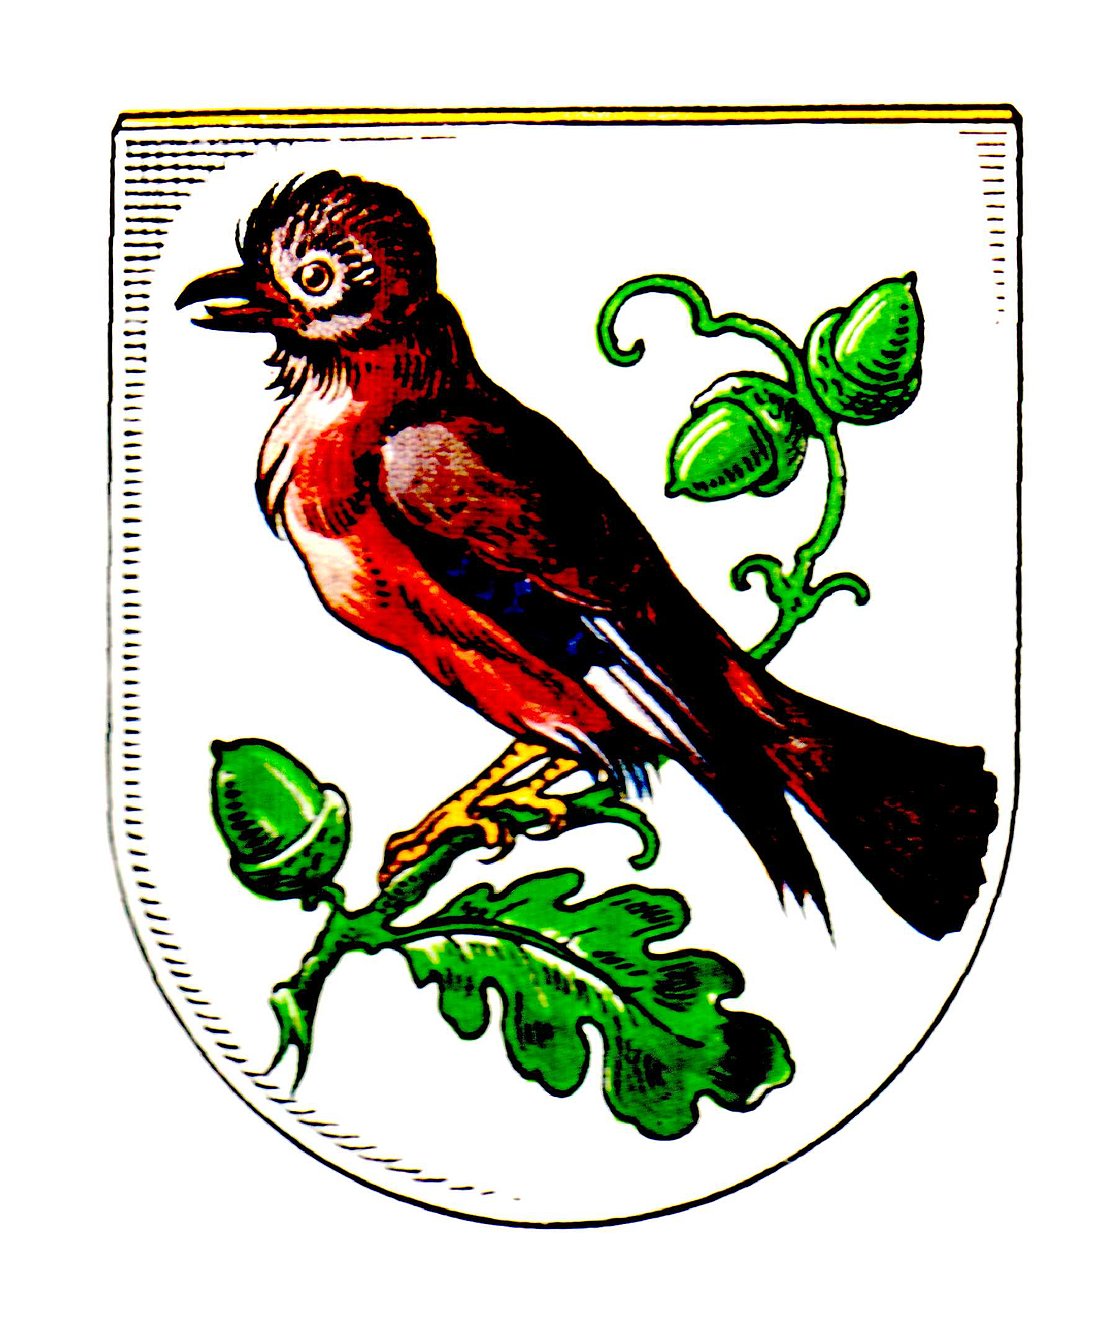 Wappen von Röllinghausen